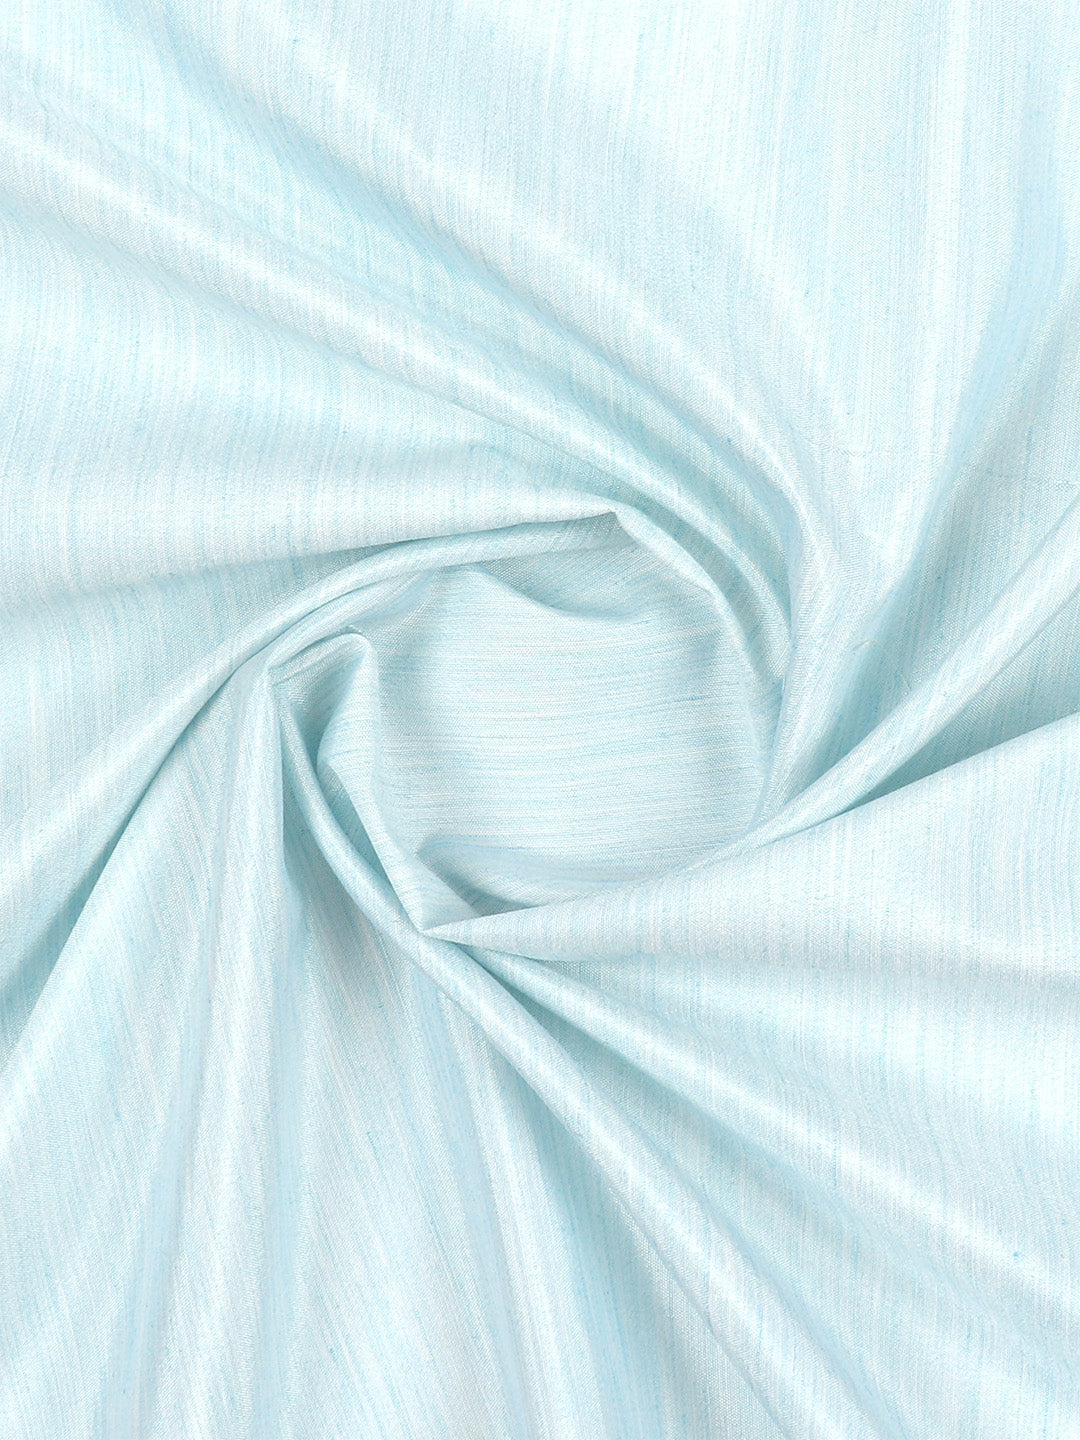 Cotton Rich Light Blue Plain Shirt Fabric - Galaxy Art